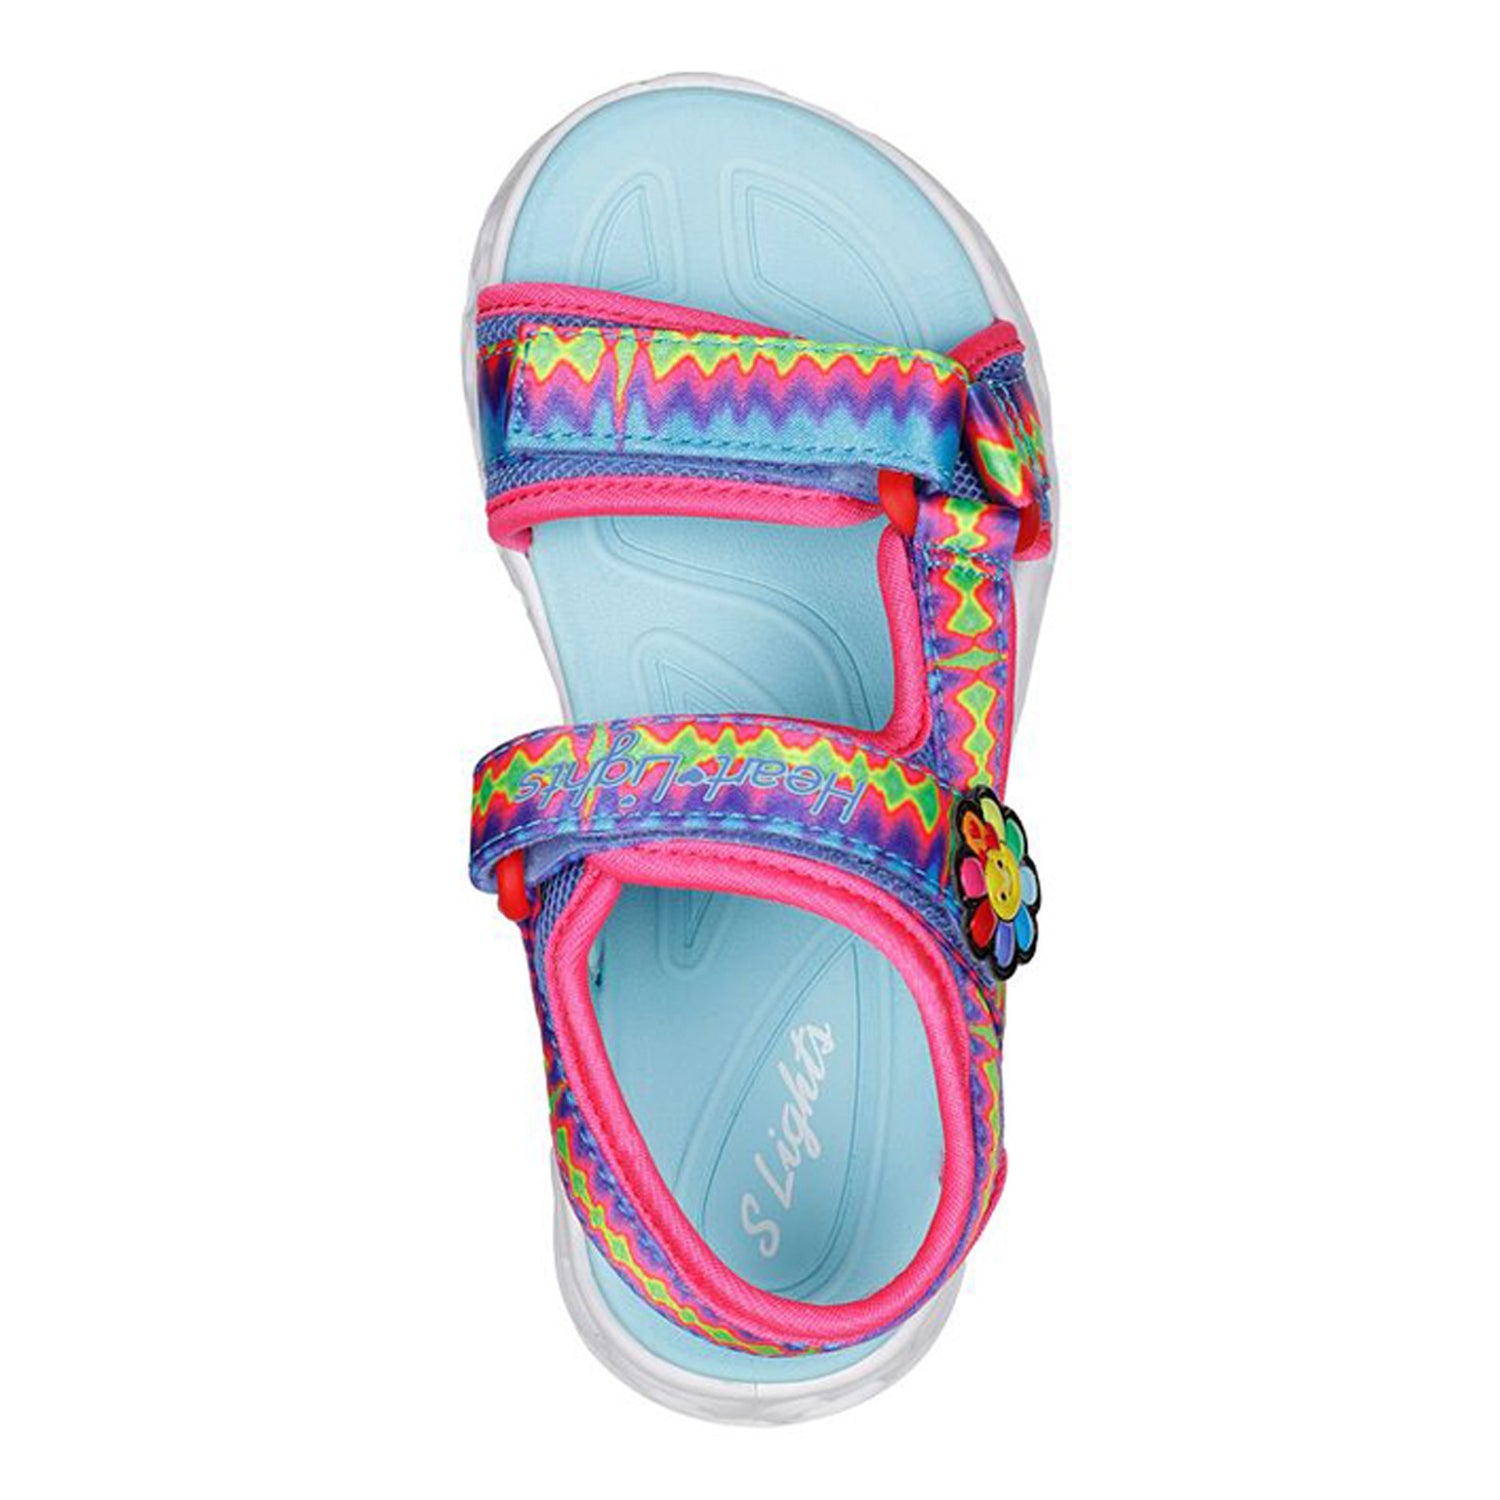 Peltz Shoes  Girl's Skechers Heart Lights - Miss Vibrant Sandal - Little Kid MULTI FABRIC 302675L-MLT